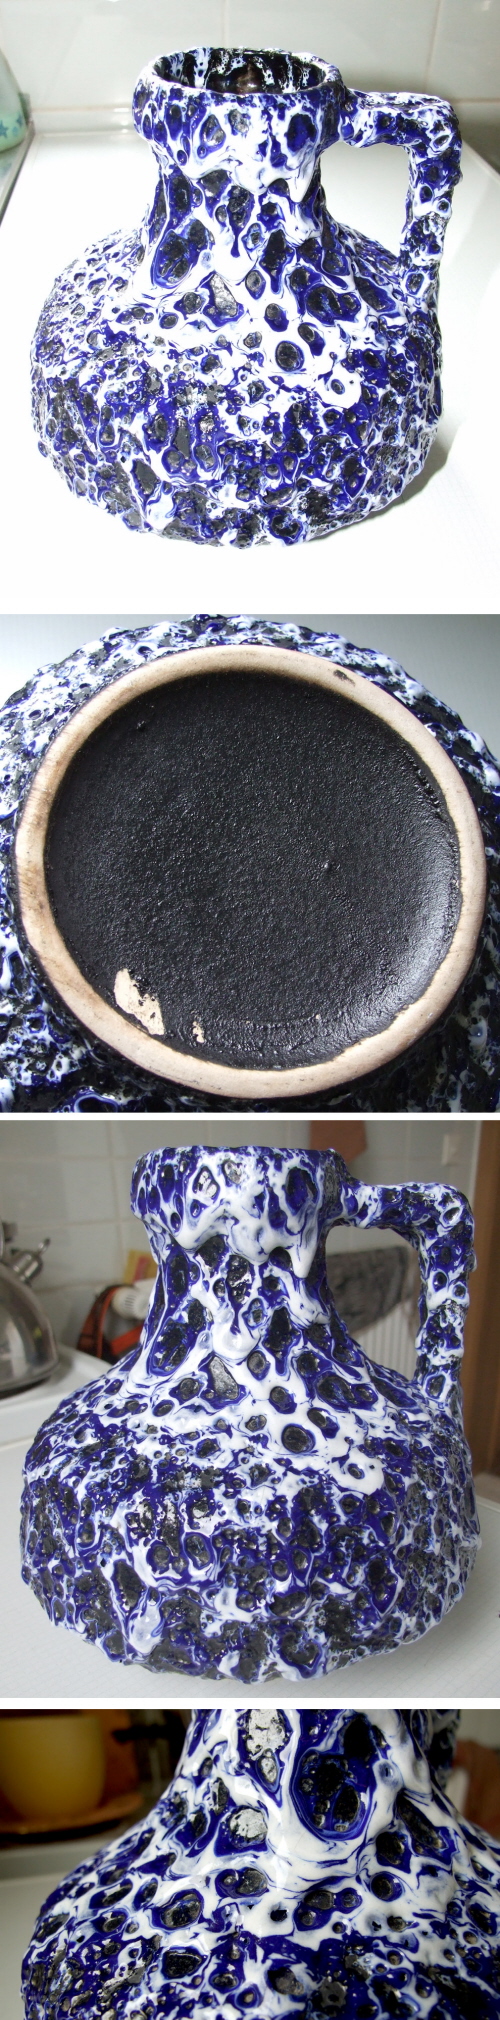 ES Keramik blau lava